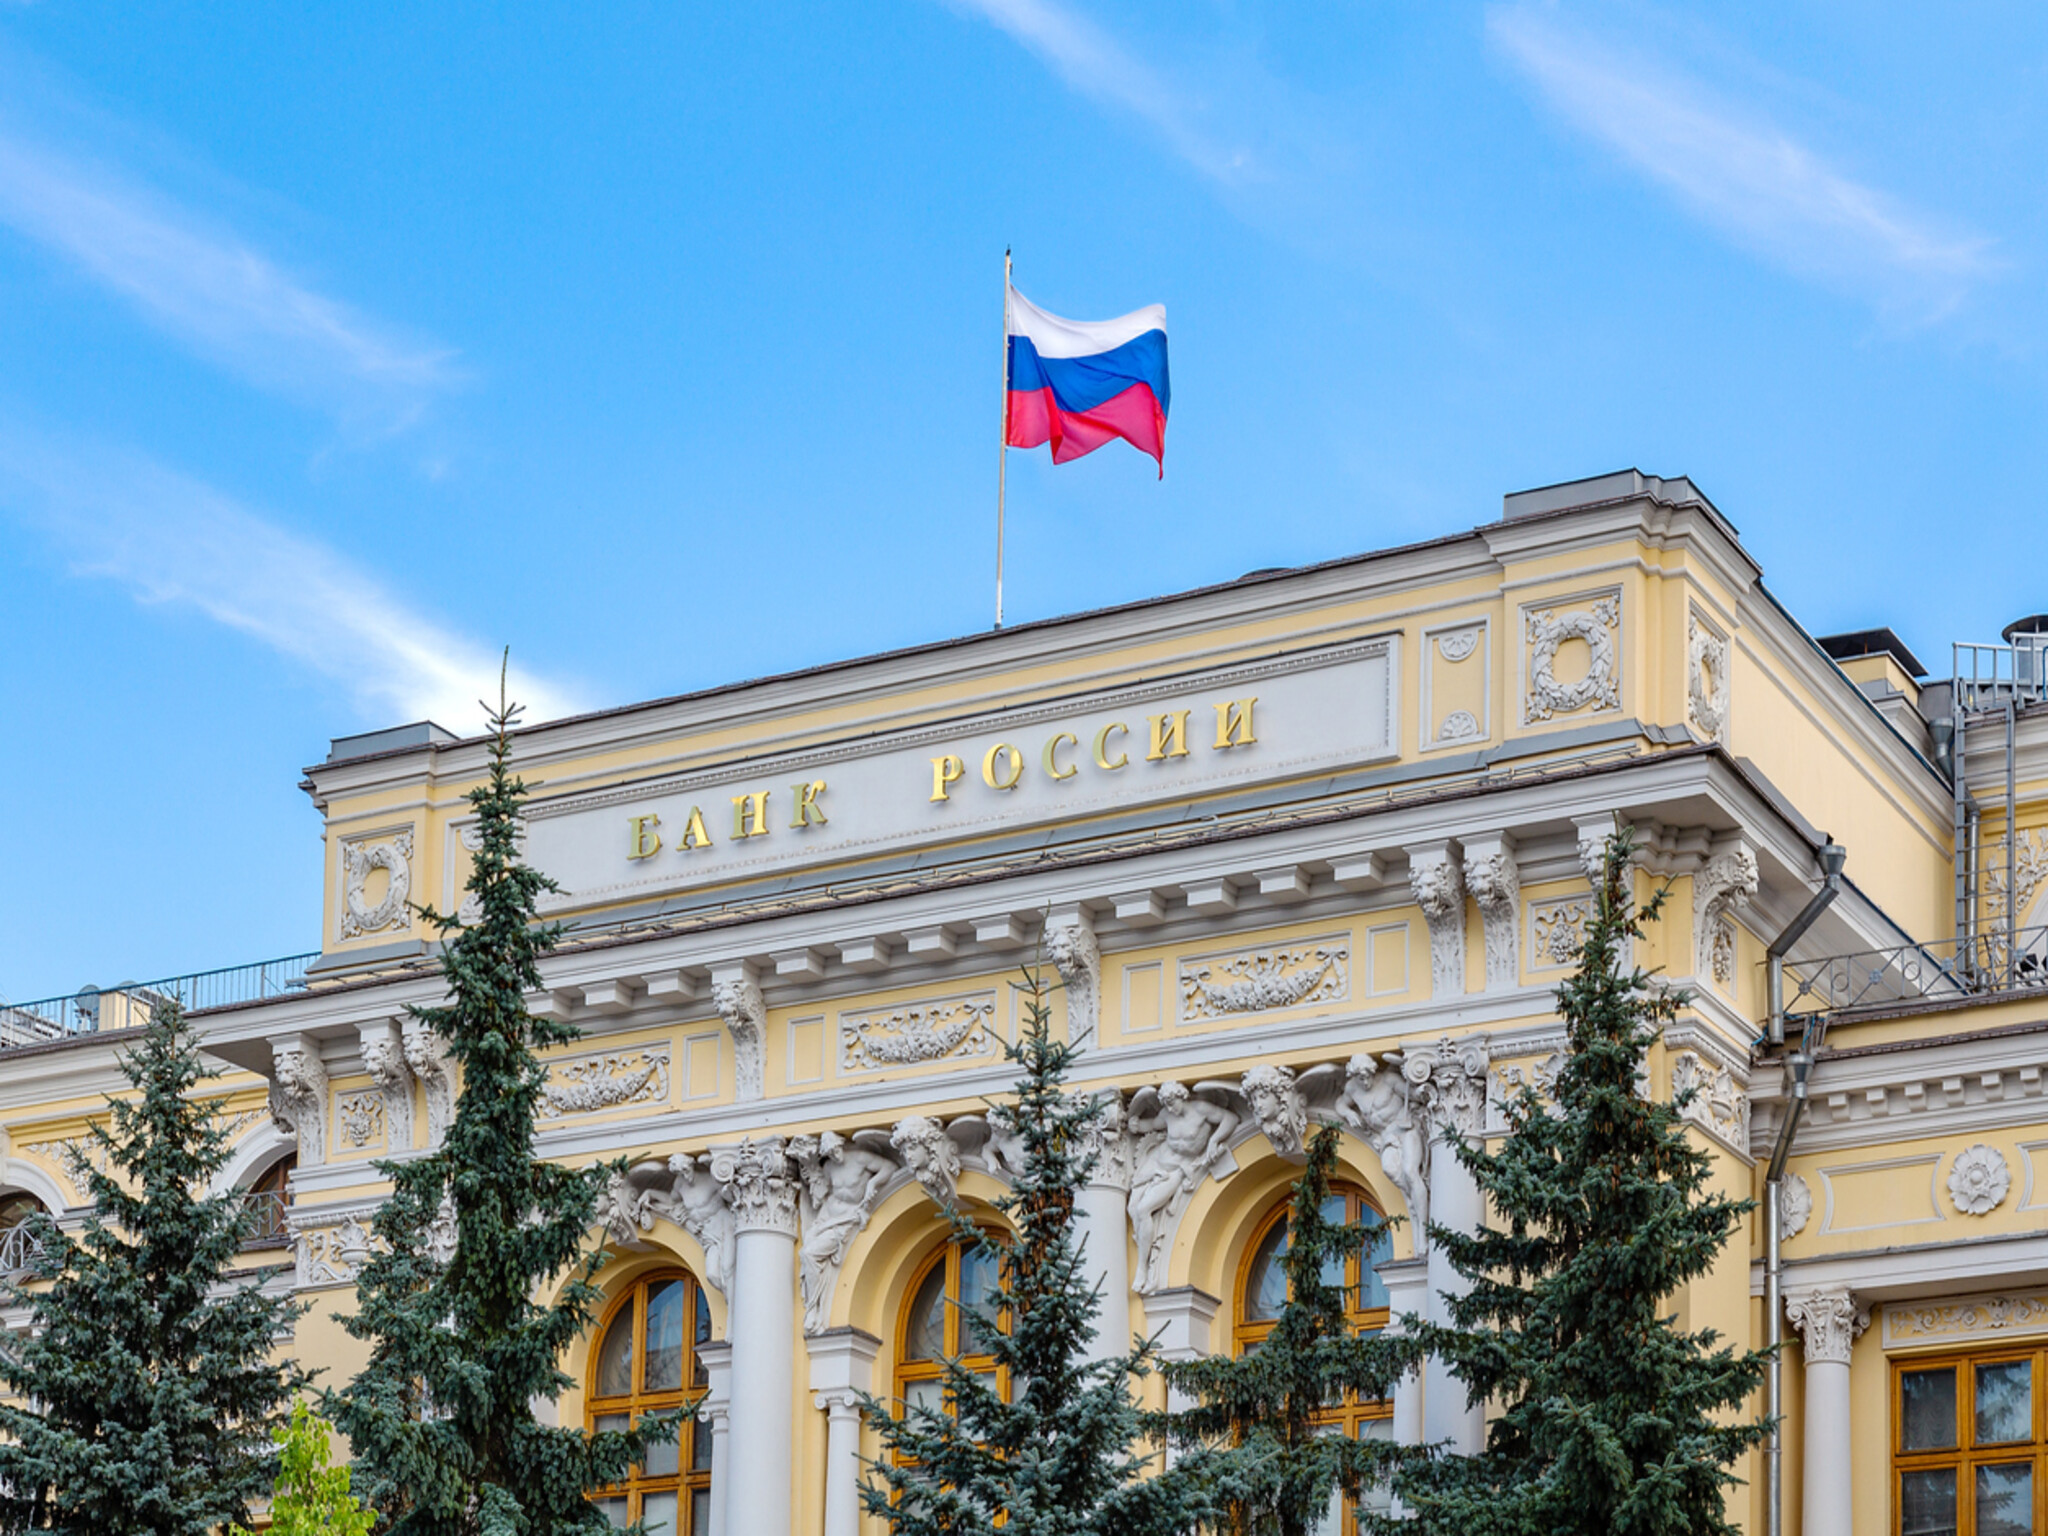 البنك المركزي الروسي يرفع معدل الفائدة الرئيسي لـ 16% للحد من التضخم  